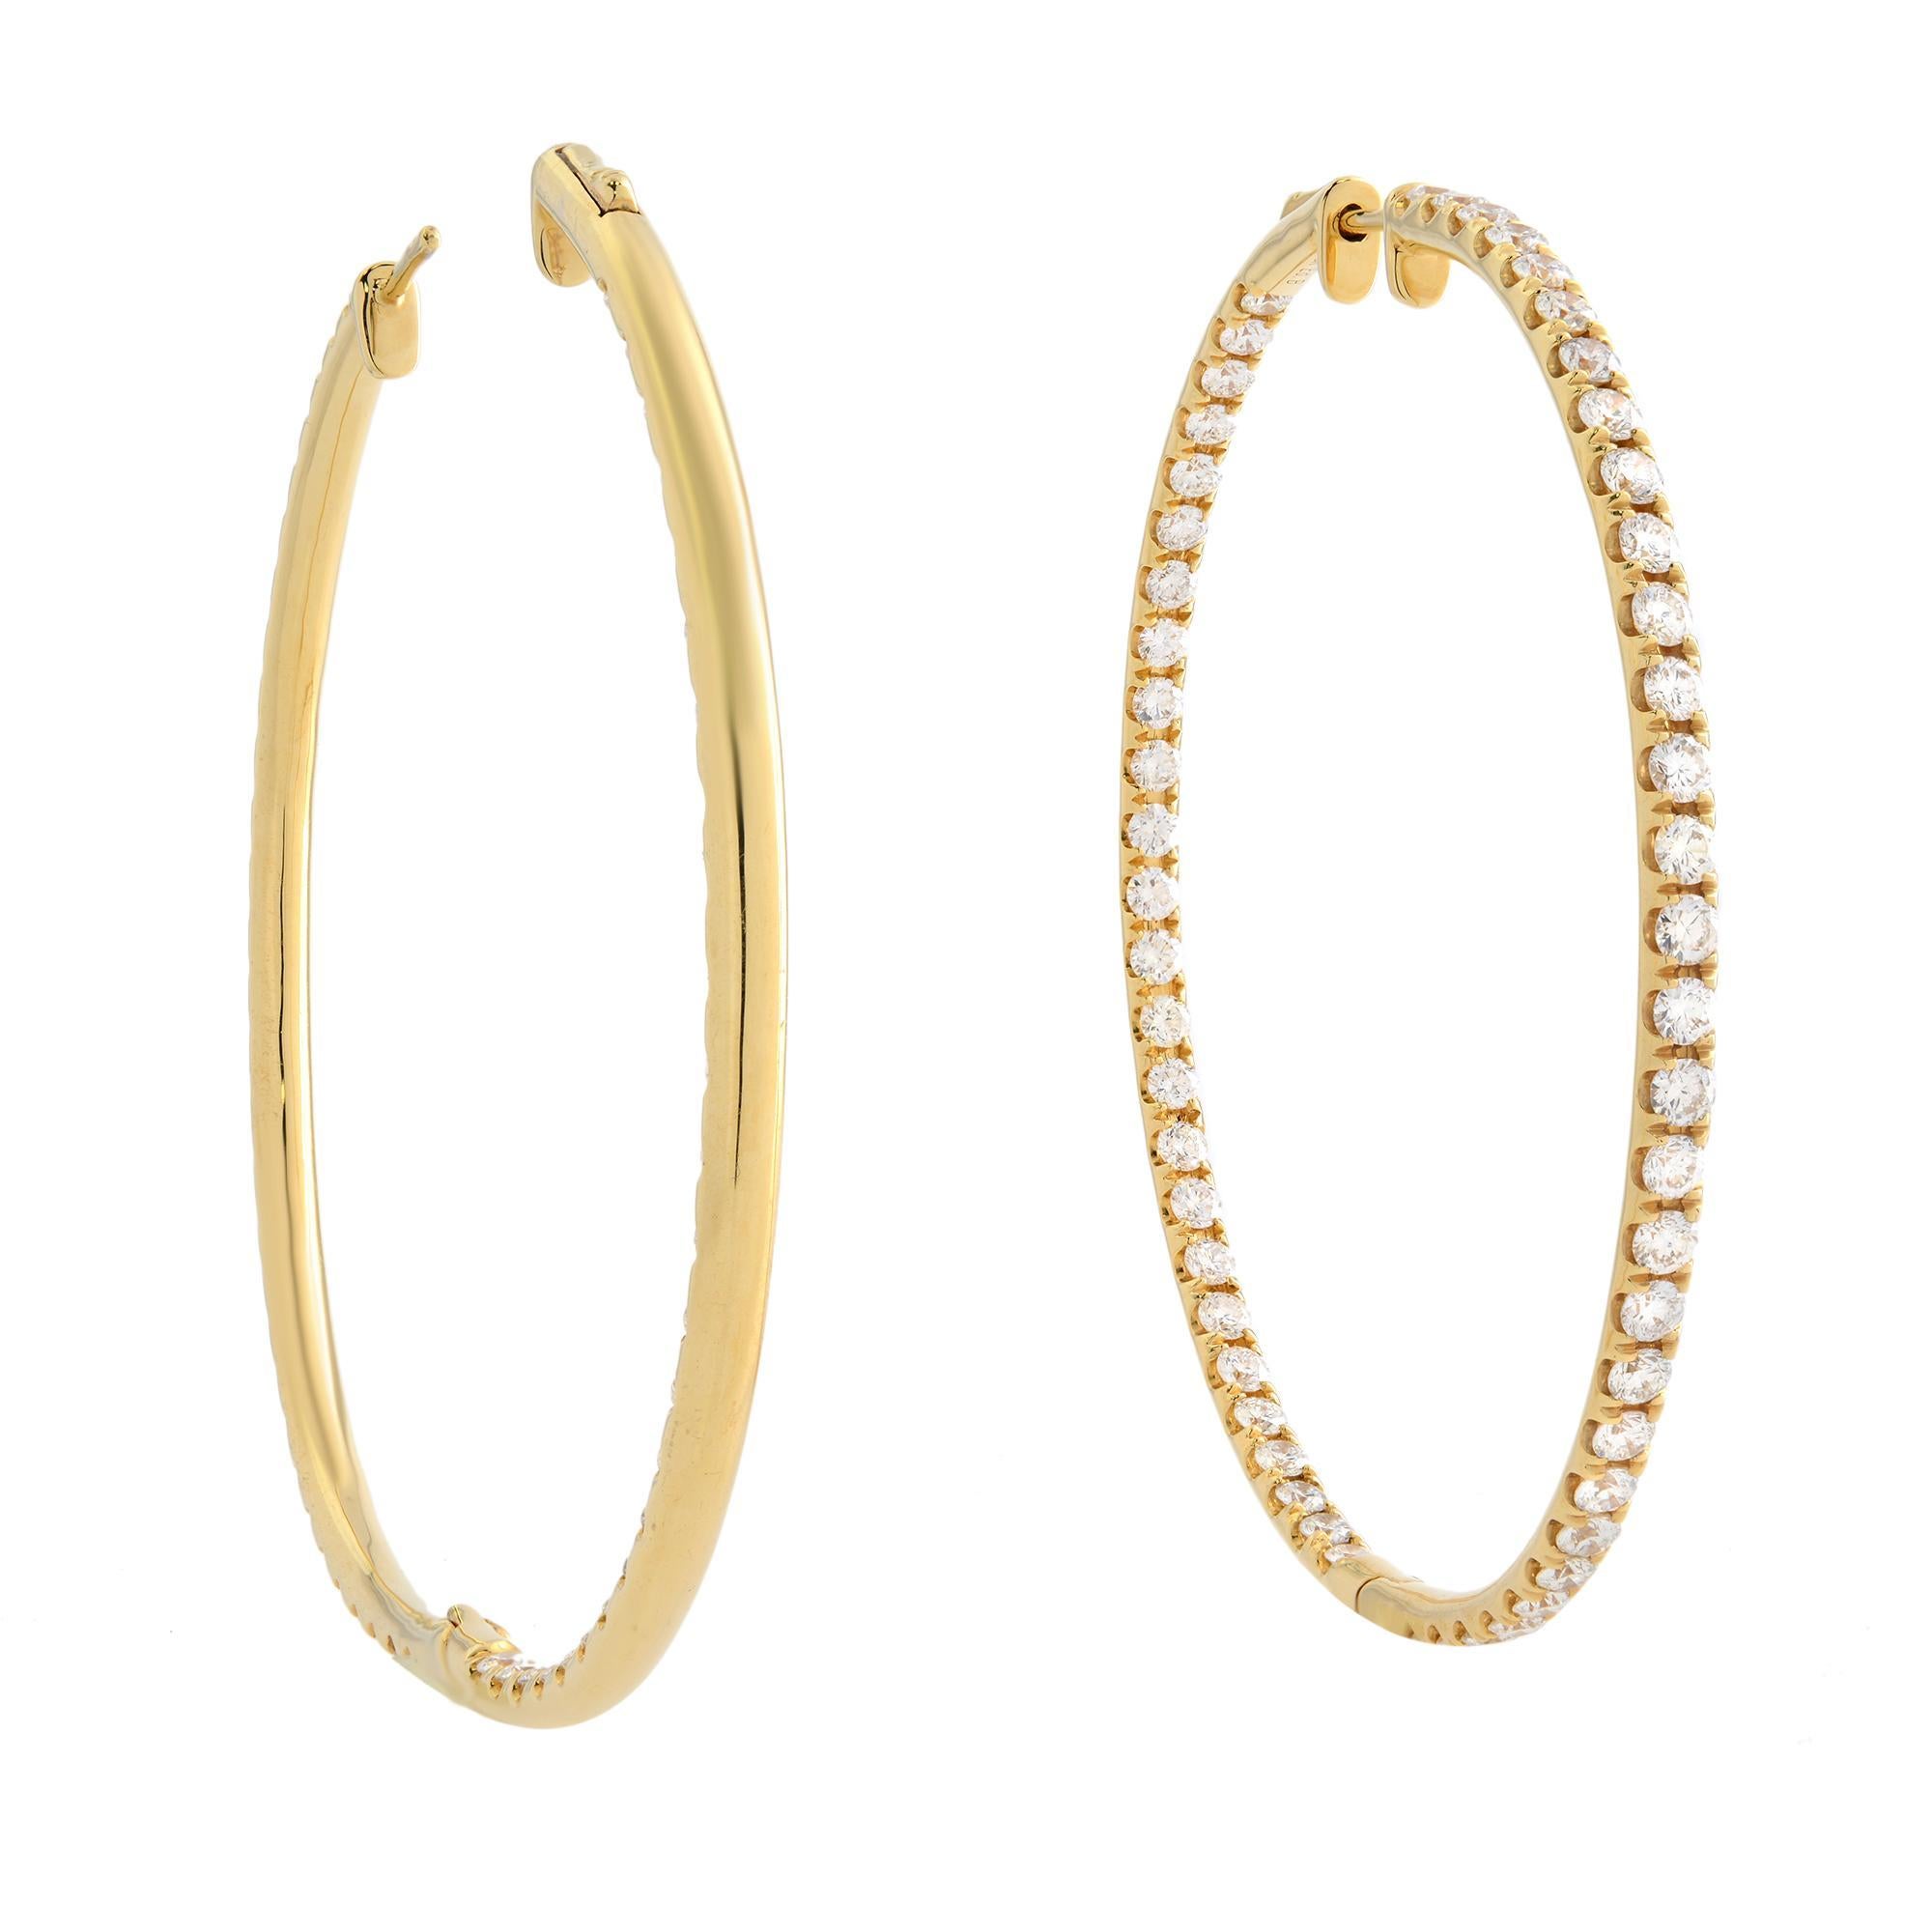 Round Cut Rachel Koen Inside Out Diamond Hoop Earrings 14K Yellow Gold 1.75cttw For Sale